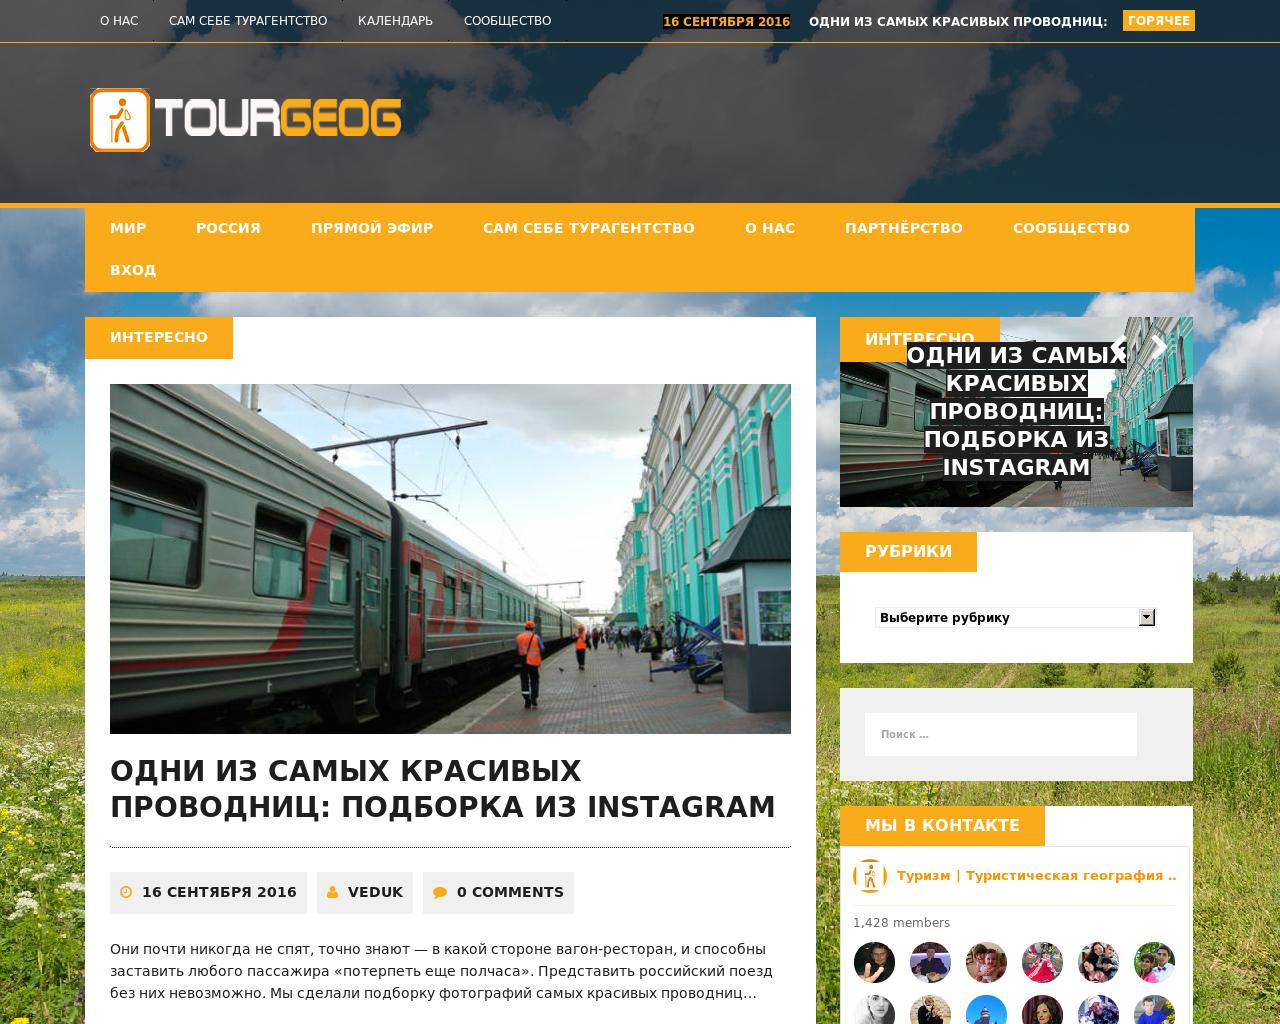 Изображение сайта tourgeog.ru в разрешении 1280x1024